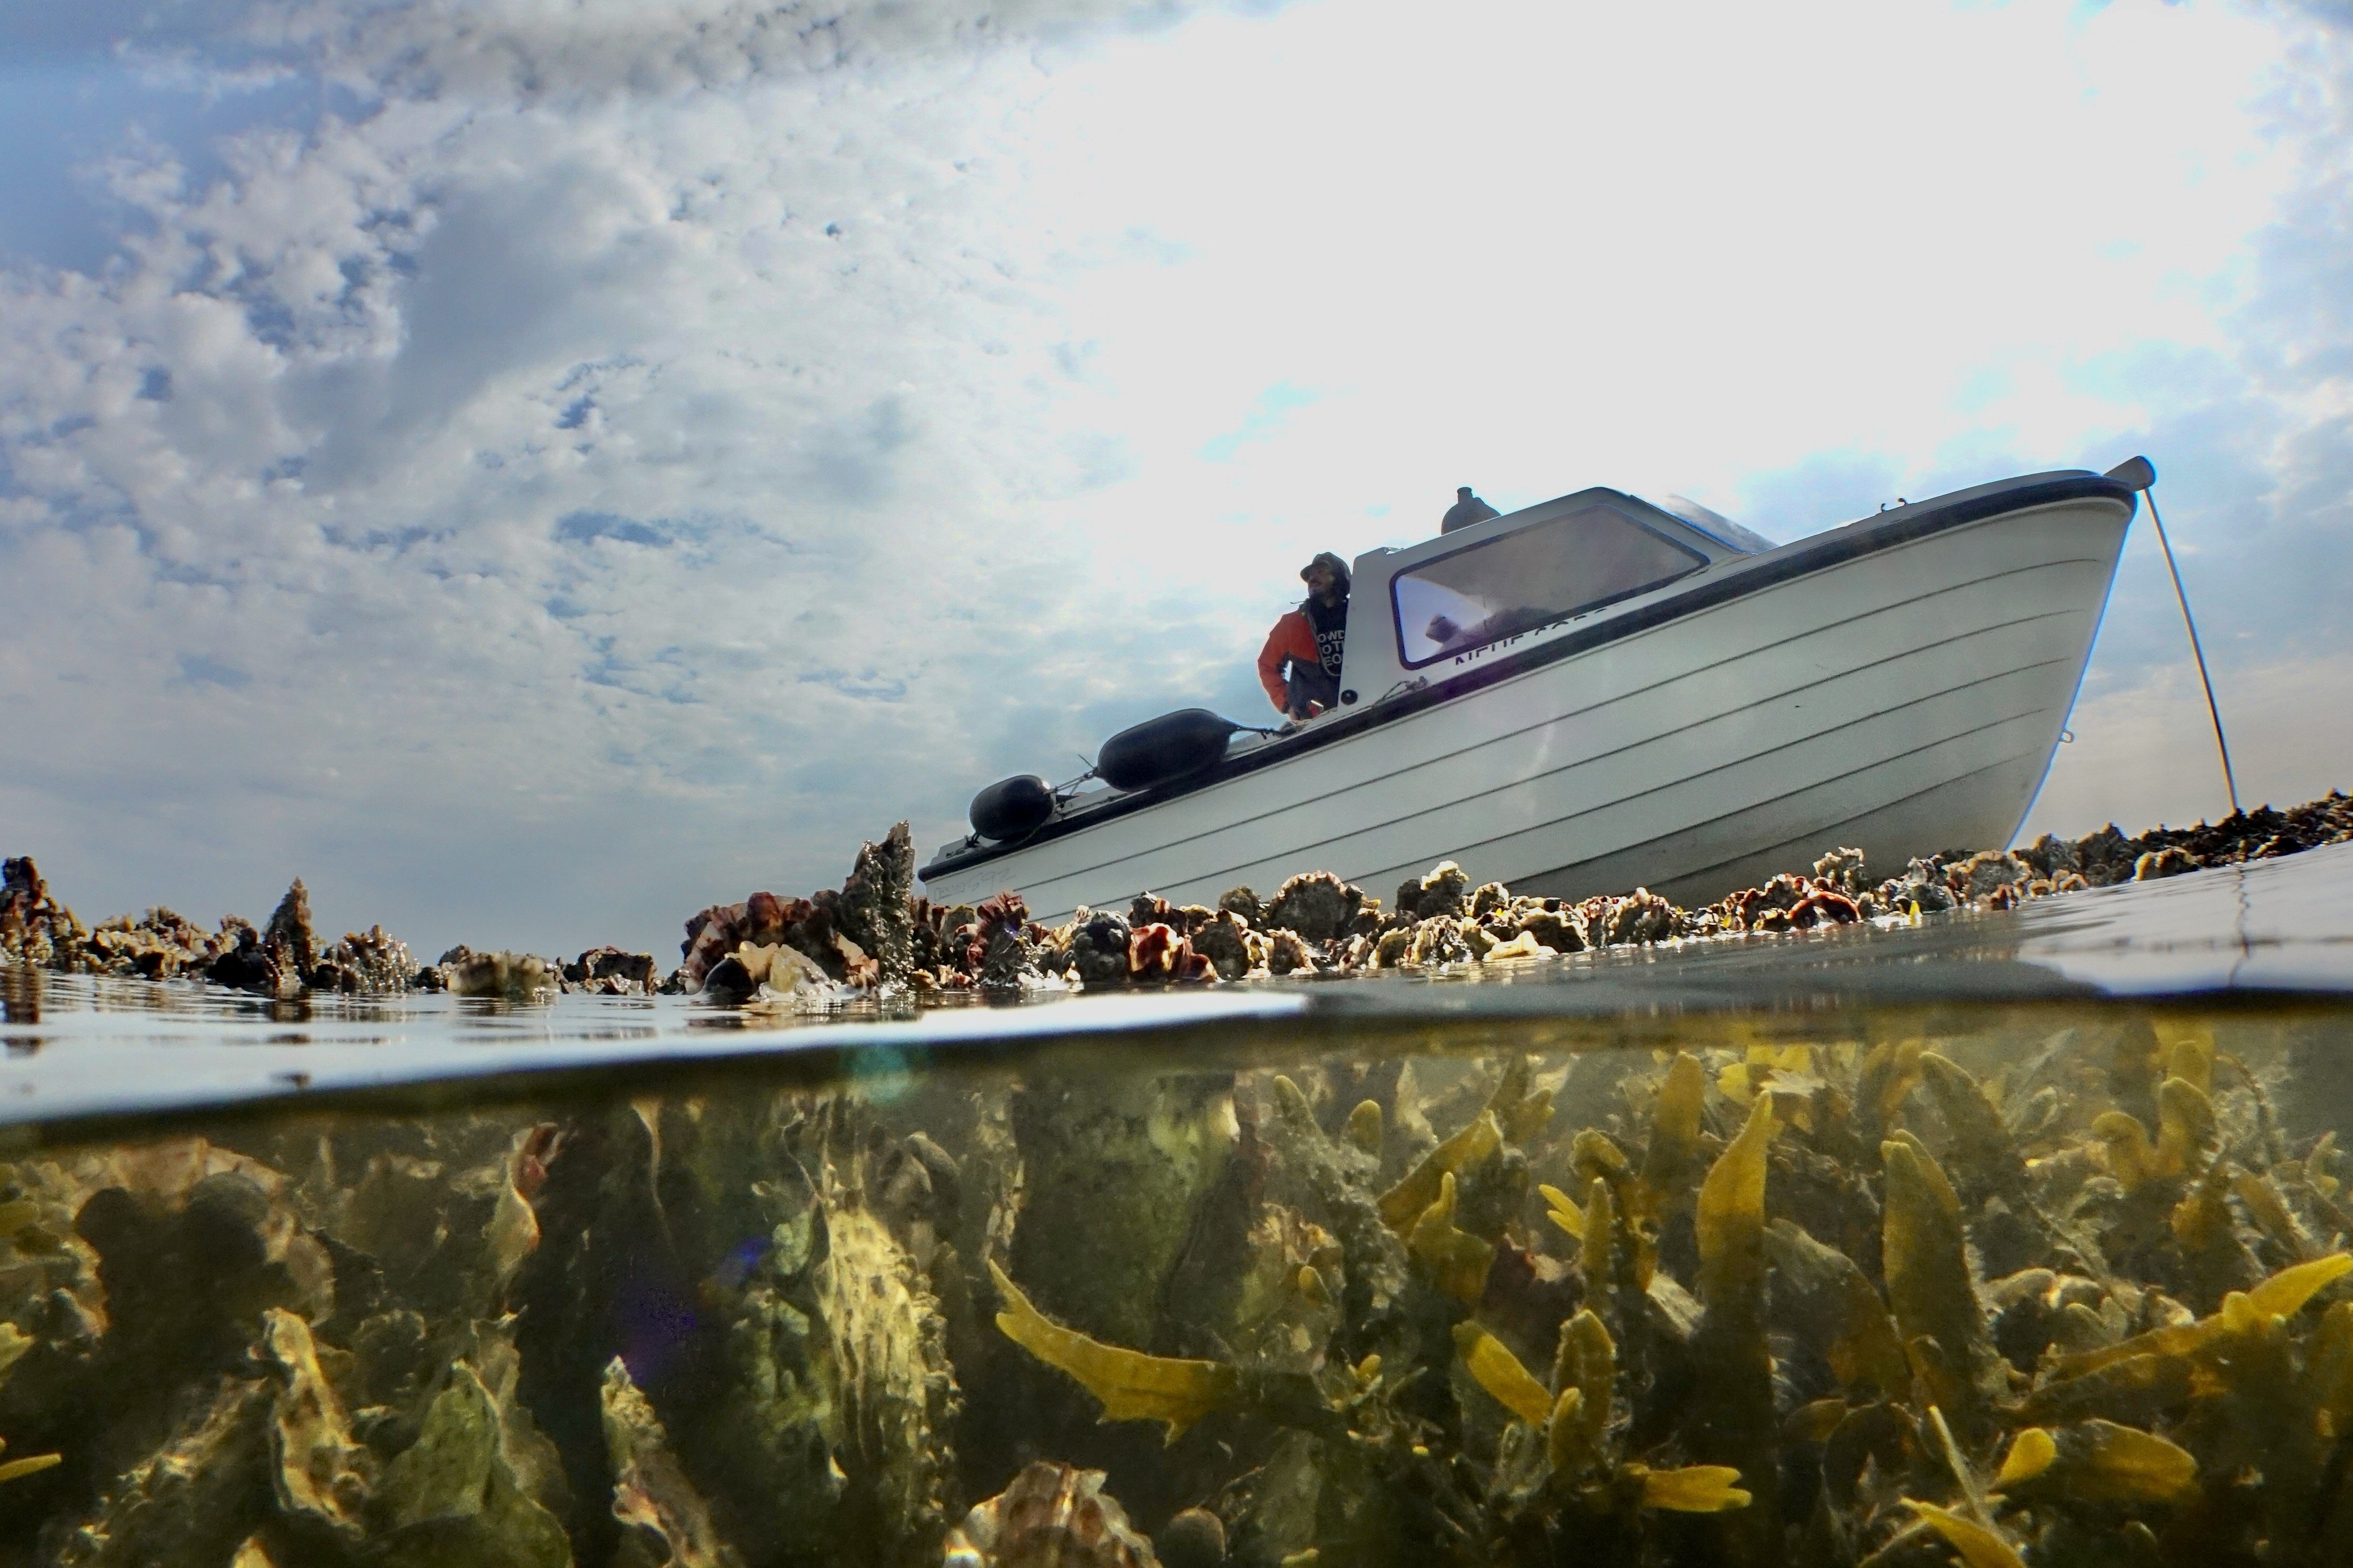 Foto eines Boots, das auf einer Muschelbank liegt, Aufnahme von unten, unterer Teil des Fotos zeigt die Unterwasseransicht mit Muscheln und Tang.